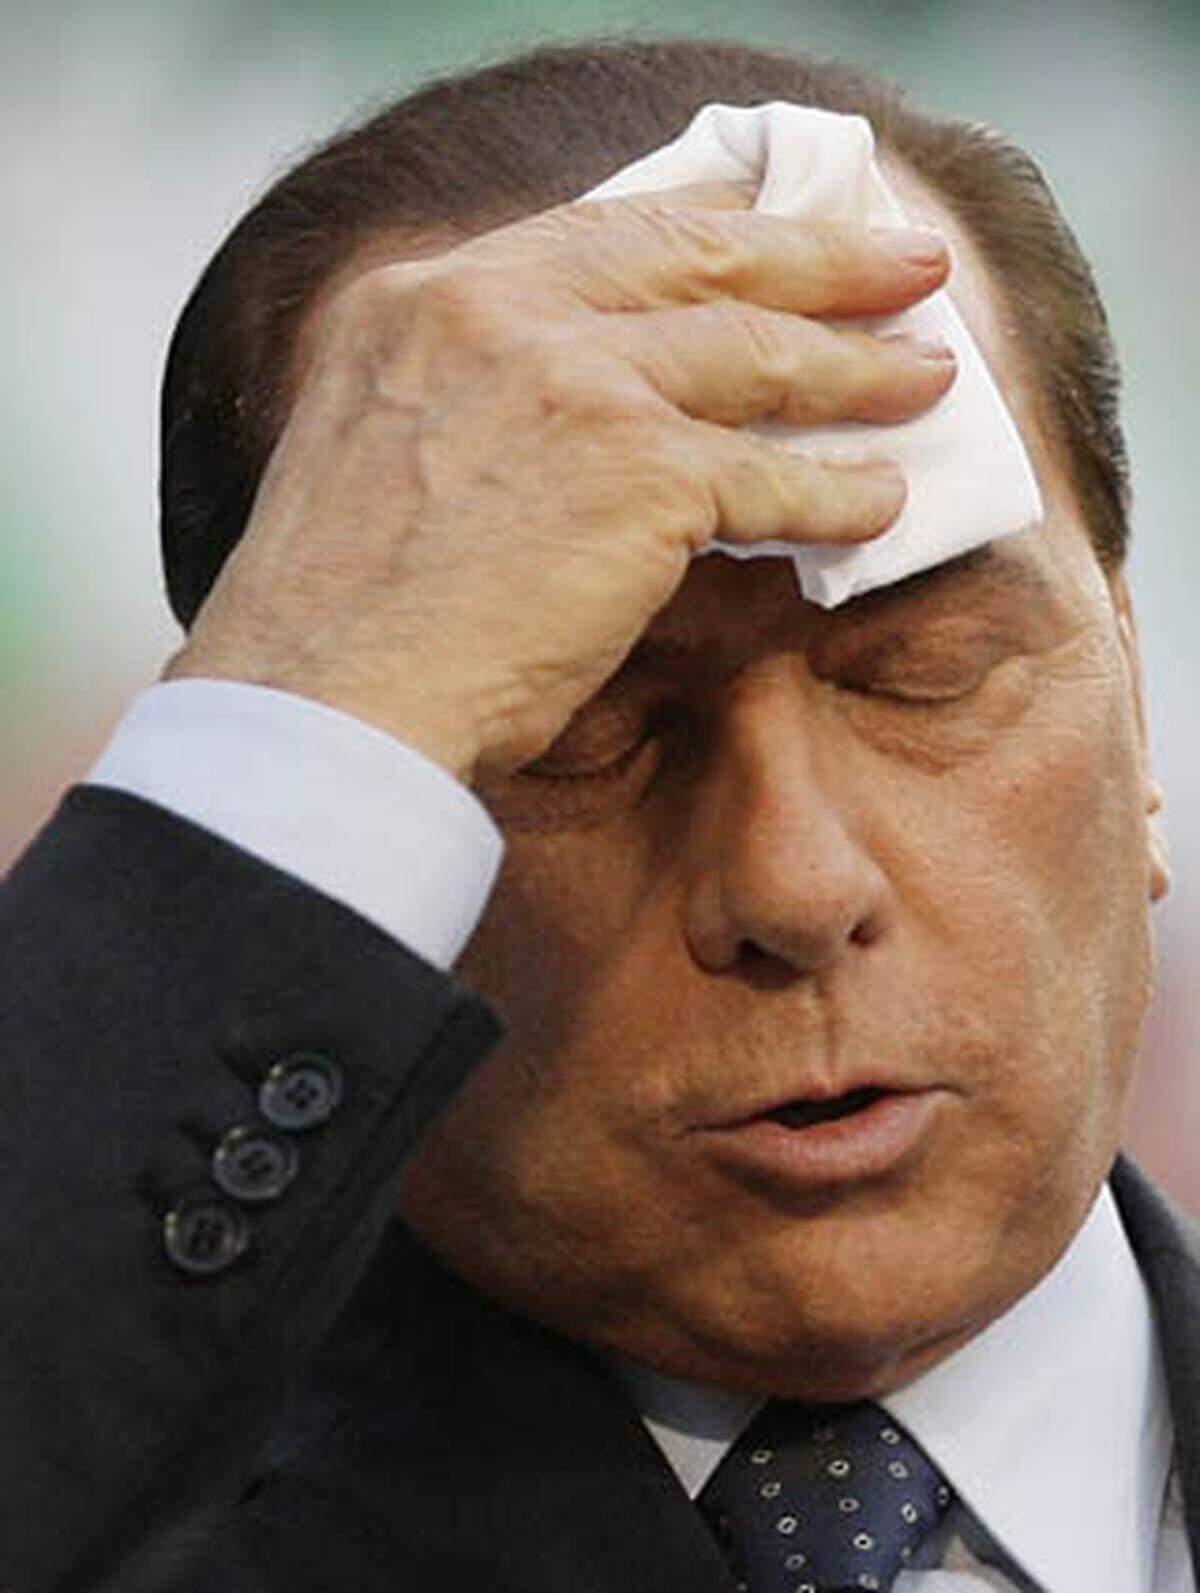 Der italienische Regierungschef Silvio Berlusconi erlebte 2009 das schwierigste Jahr seit seinem Einstieg in die Politik 1993. Skandale um sein Privatleben, wiederholte Konflikte mit Medien im In- und Ausland, Justizprobleme, die Aufhebung des Immunitätsgesetzes, das ihm bisher Straffreiheit gewährt hatte und schlussendliche mutmaßliche Mafia-Verwicklungen, haben das Ansehen des Ministerpräsidenten und Medienunternehmers stark belastet. Nachfolgend eine Chronologie von Berlusconis "schwarzem Jahr" ...